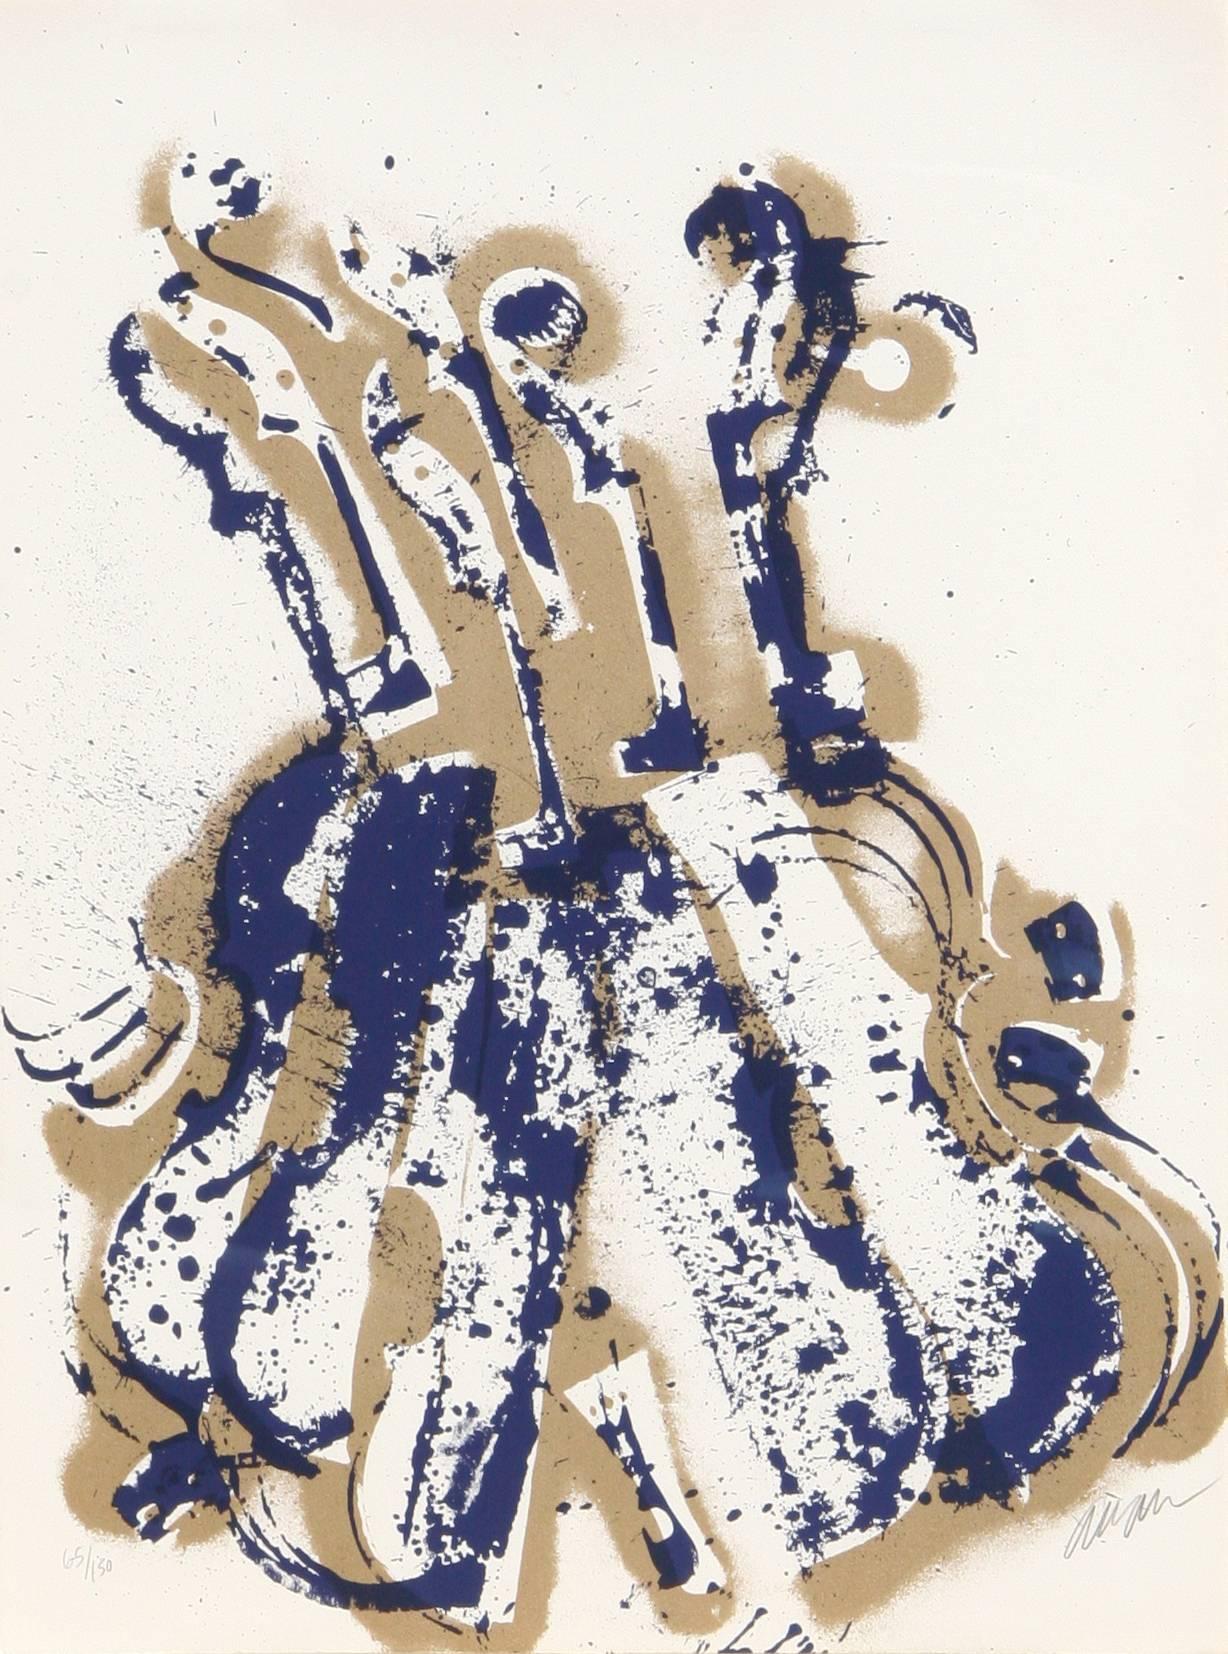 Artiste :  Arman, Français (1929 - 2005)
Titre :  Les violons d'Yves Klein
Année :  1979
Moyen :  Sérigraphie, signée et numérotée au crayon
Edition :  150
Taille :  30 po x 22 po (76,2 cm x 55,88 cm)